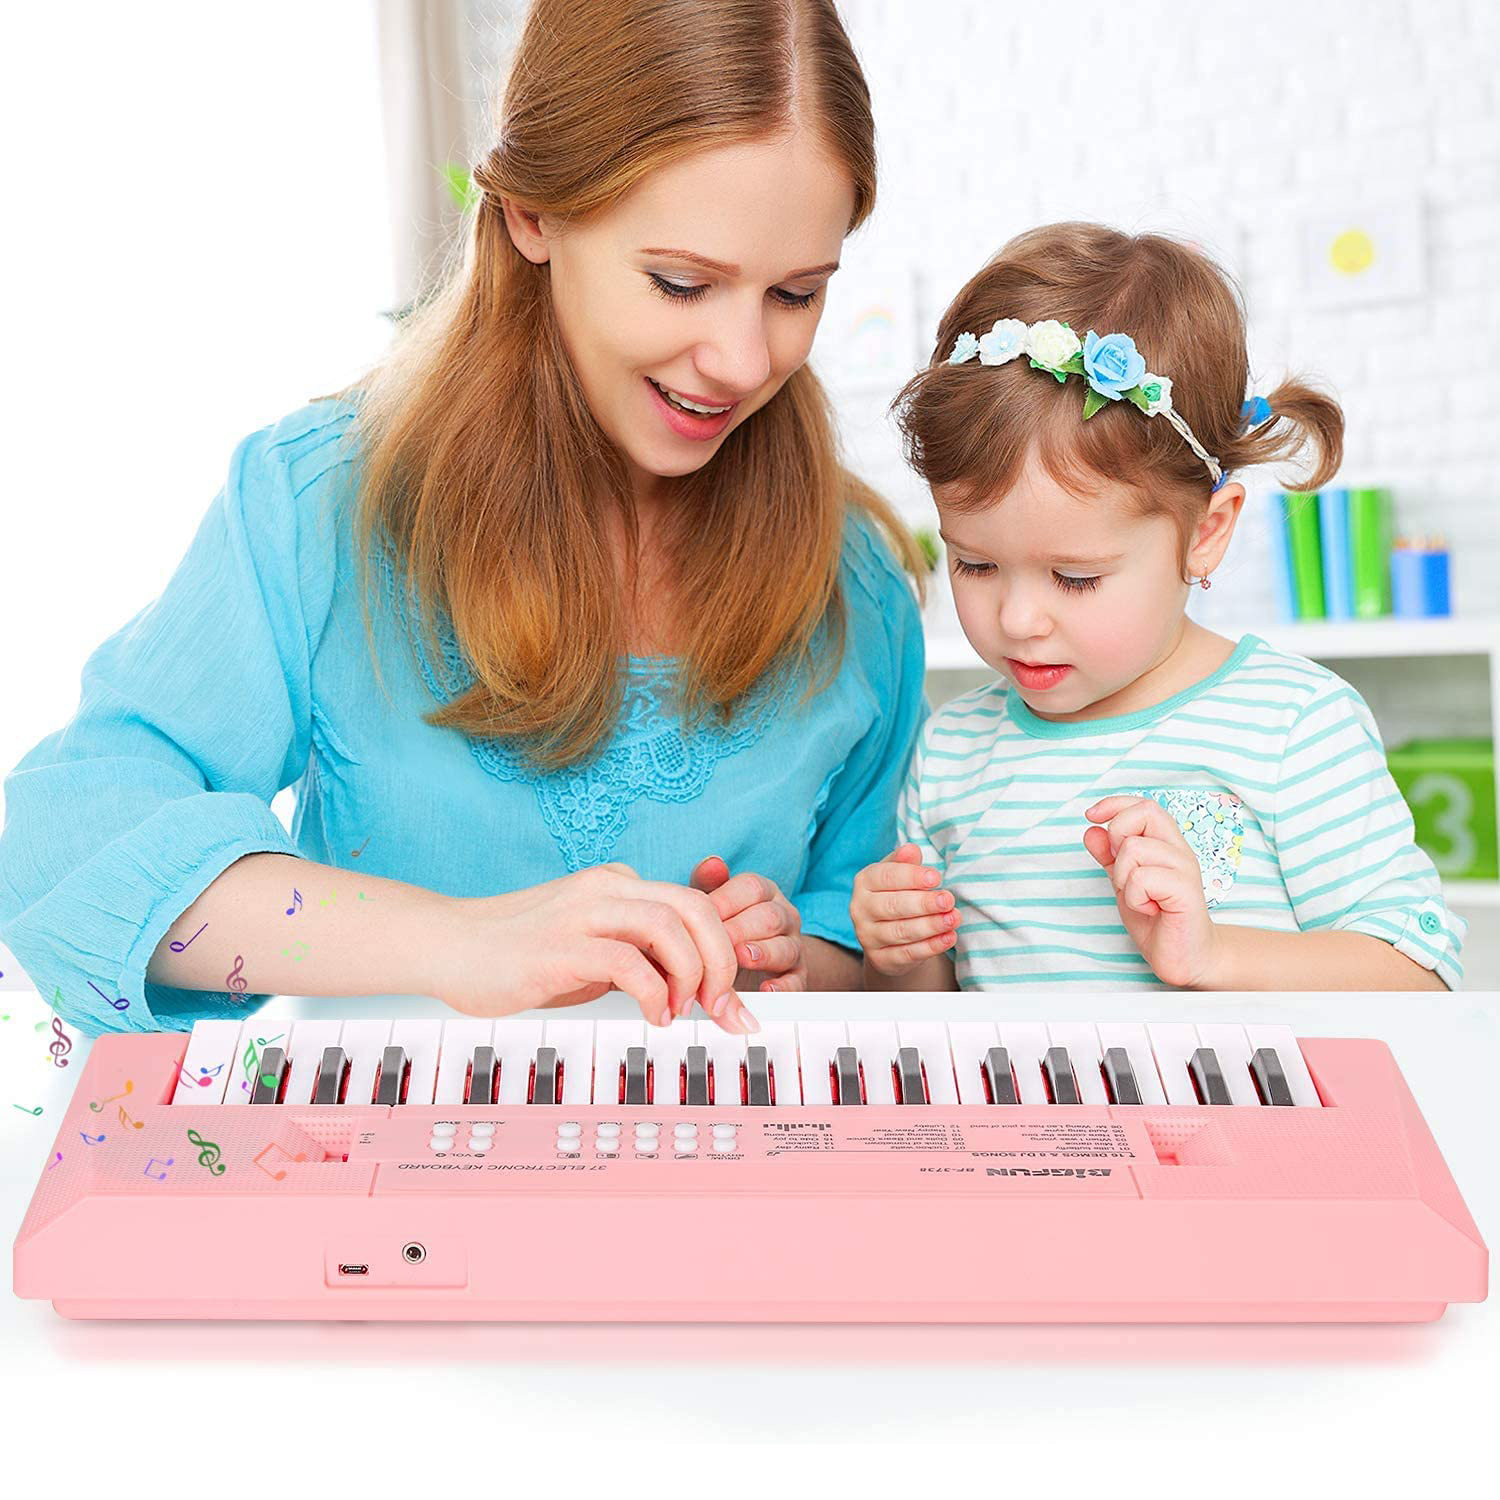 Détails du Piano à clavier électronique pour enfants, Piano à